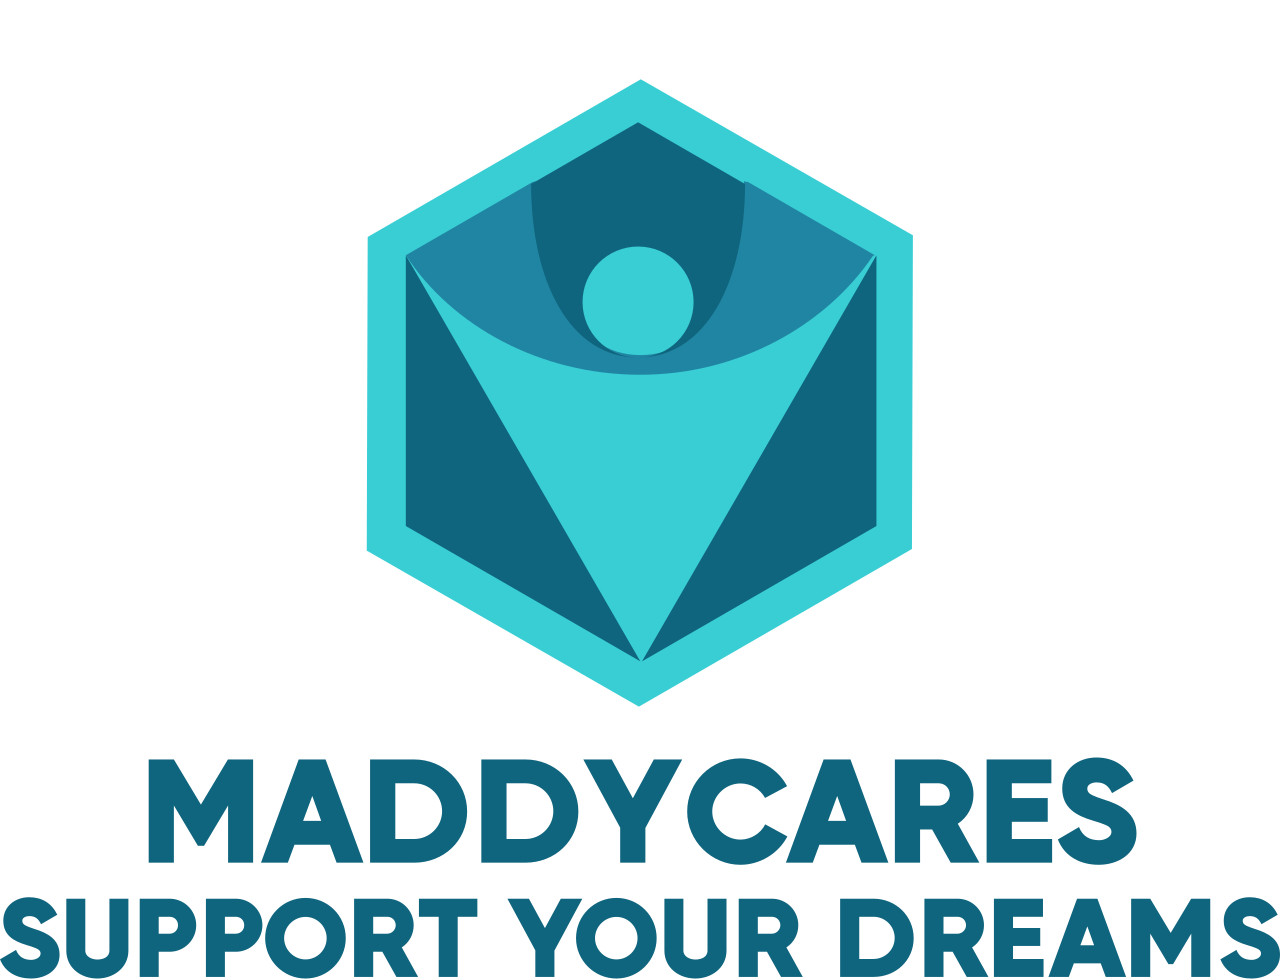 MaddyCares's logo